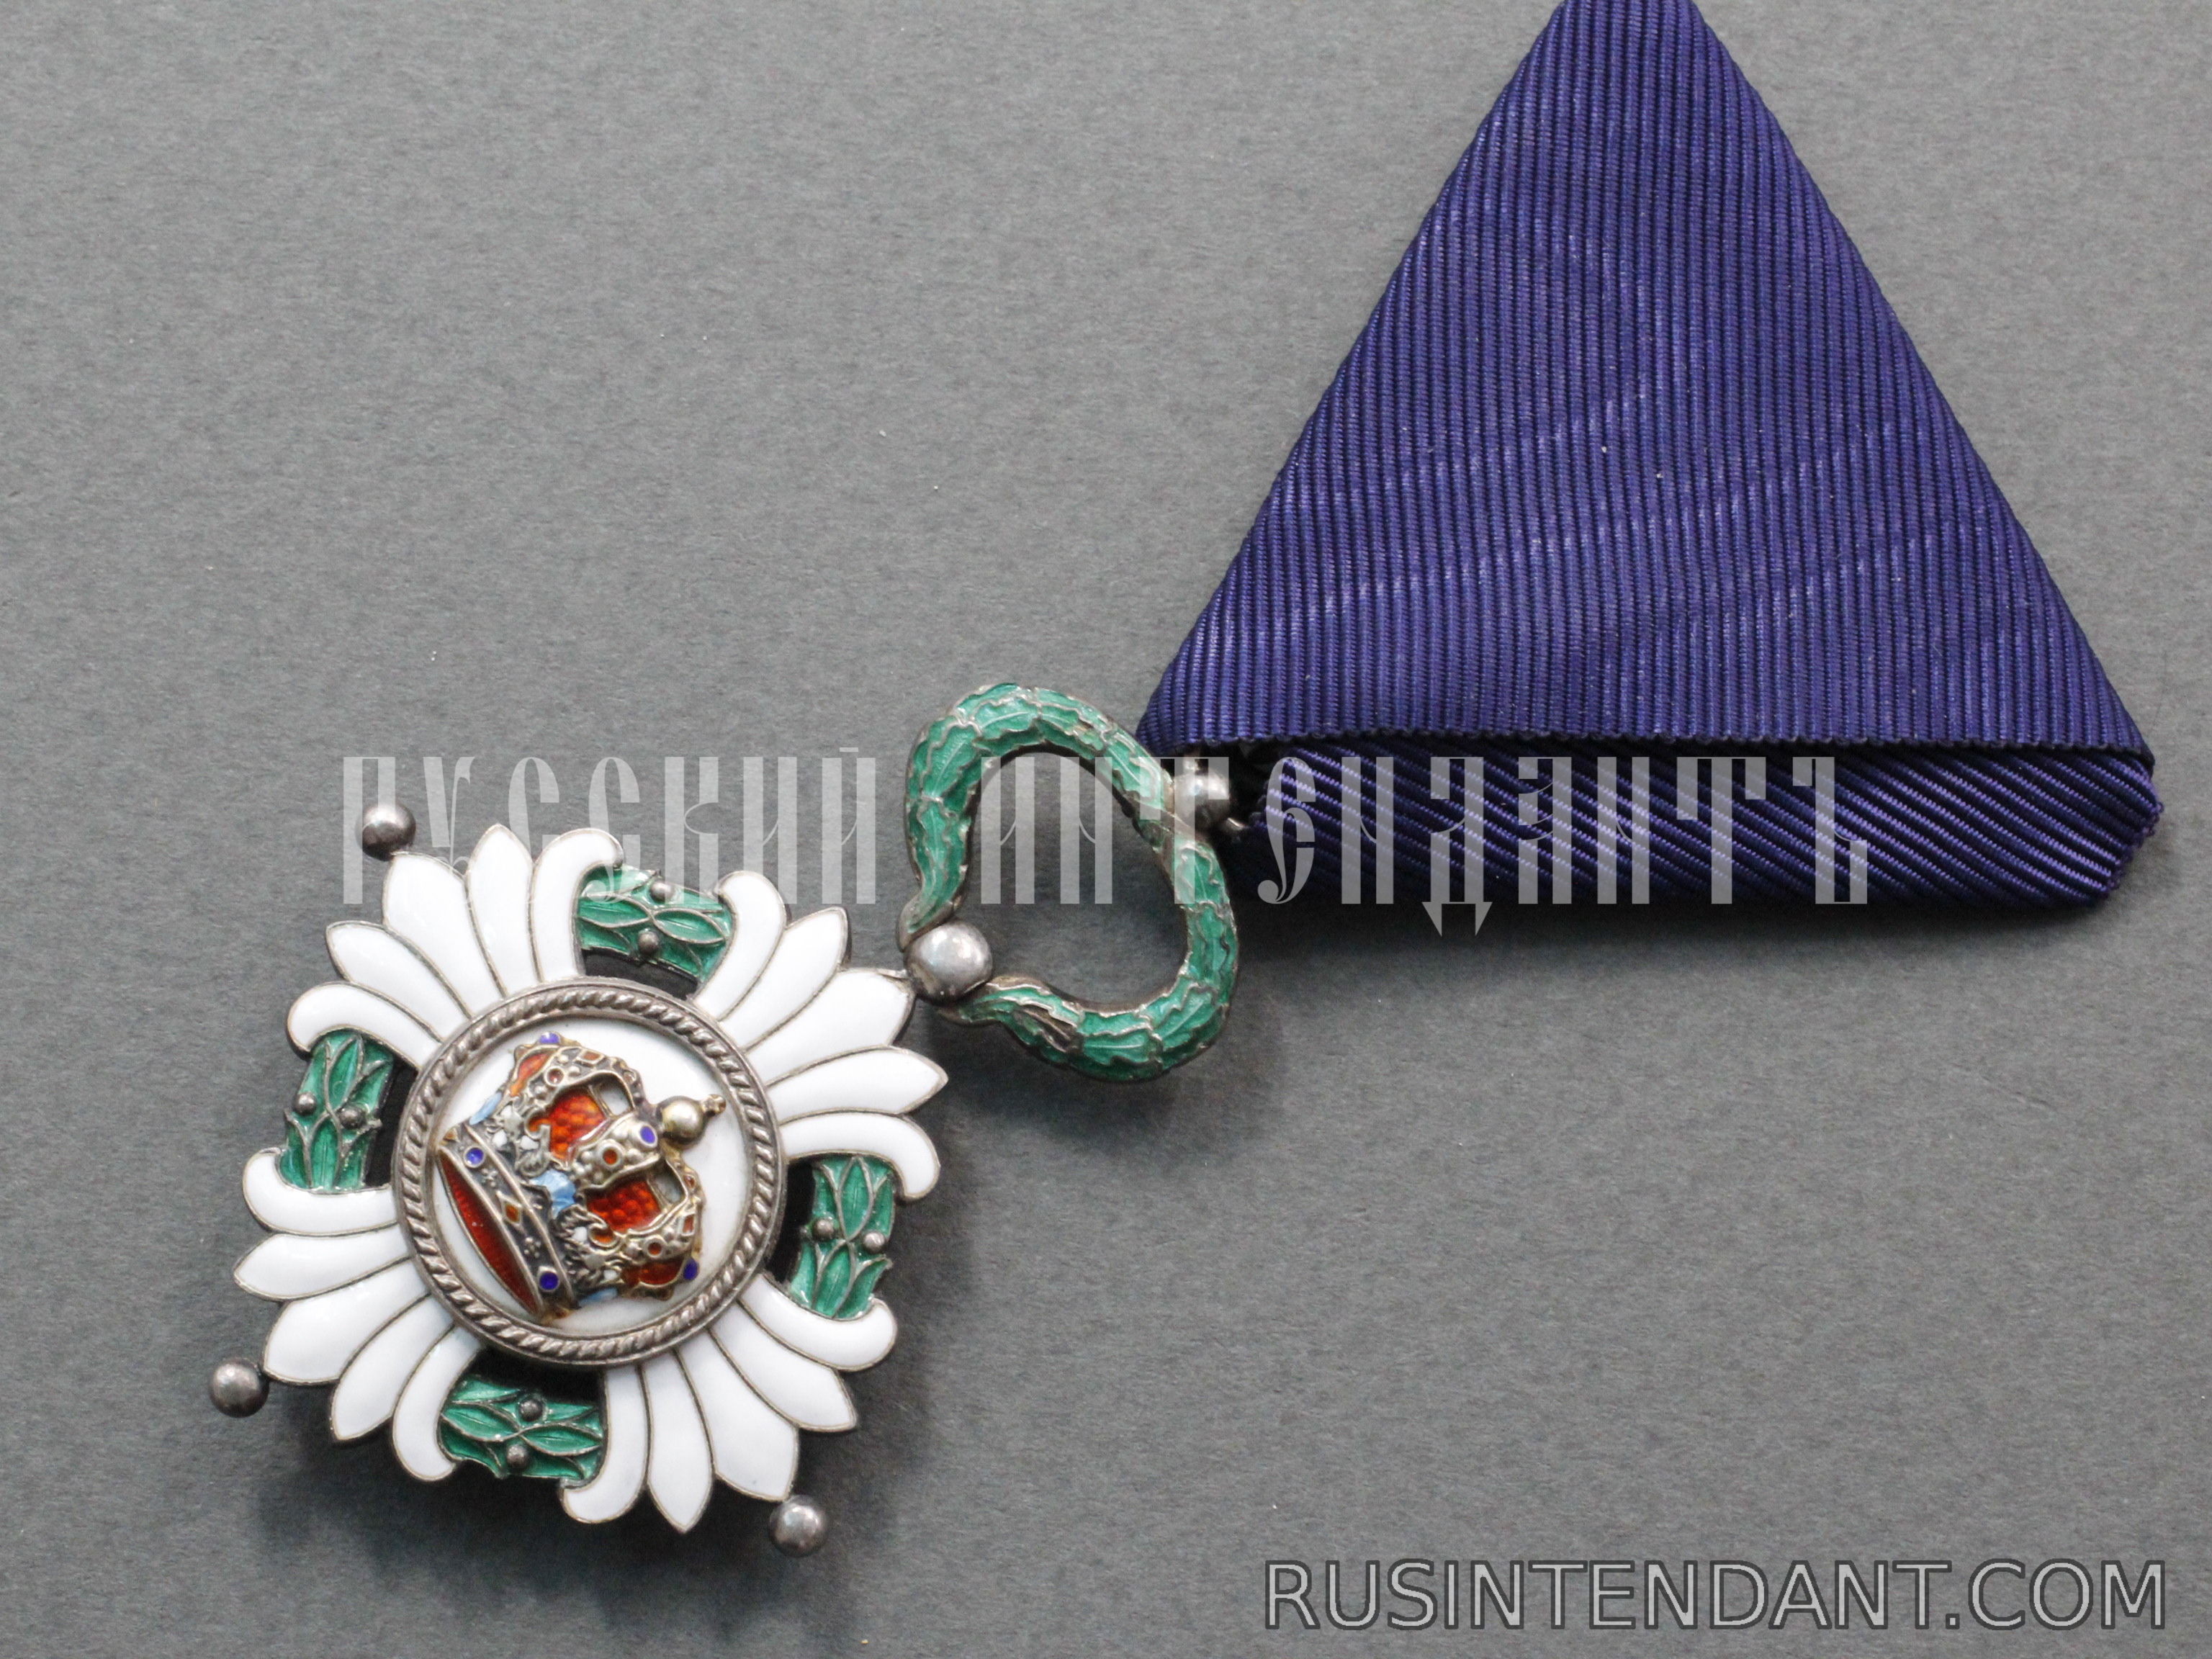 Фото 4: Орден Югославской короны 5 степени 